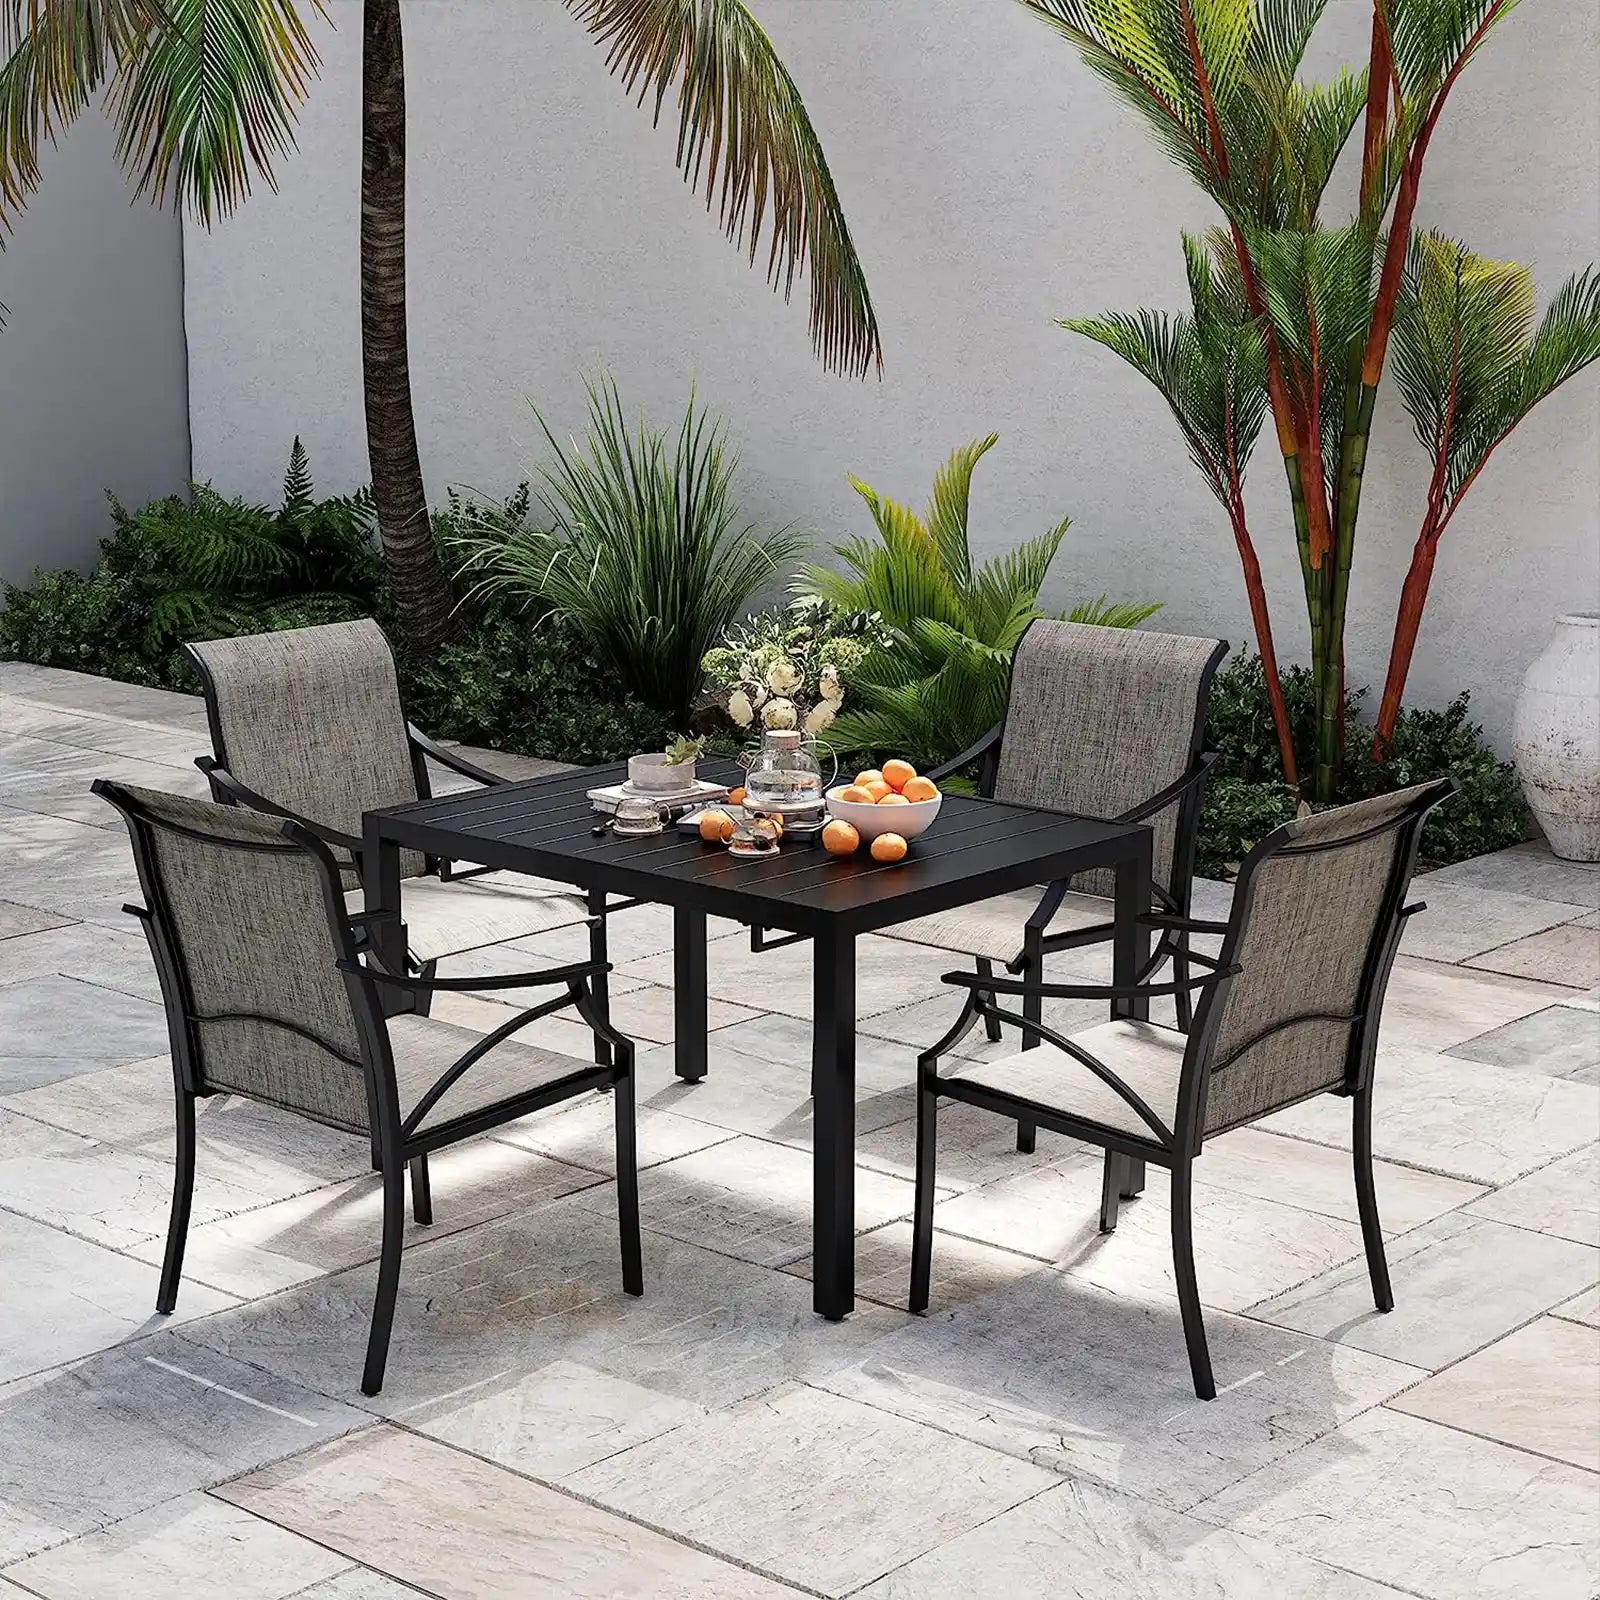 Expandable Patio Table, Metal Rectangle Outdoor Dining Table for 8, 6, 4 Person, Patio Dining Table for Lawn Garden